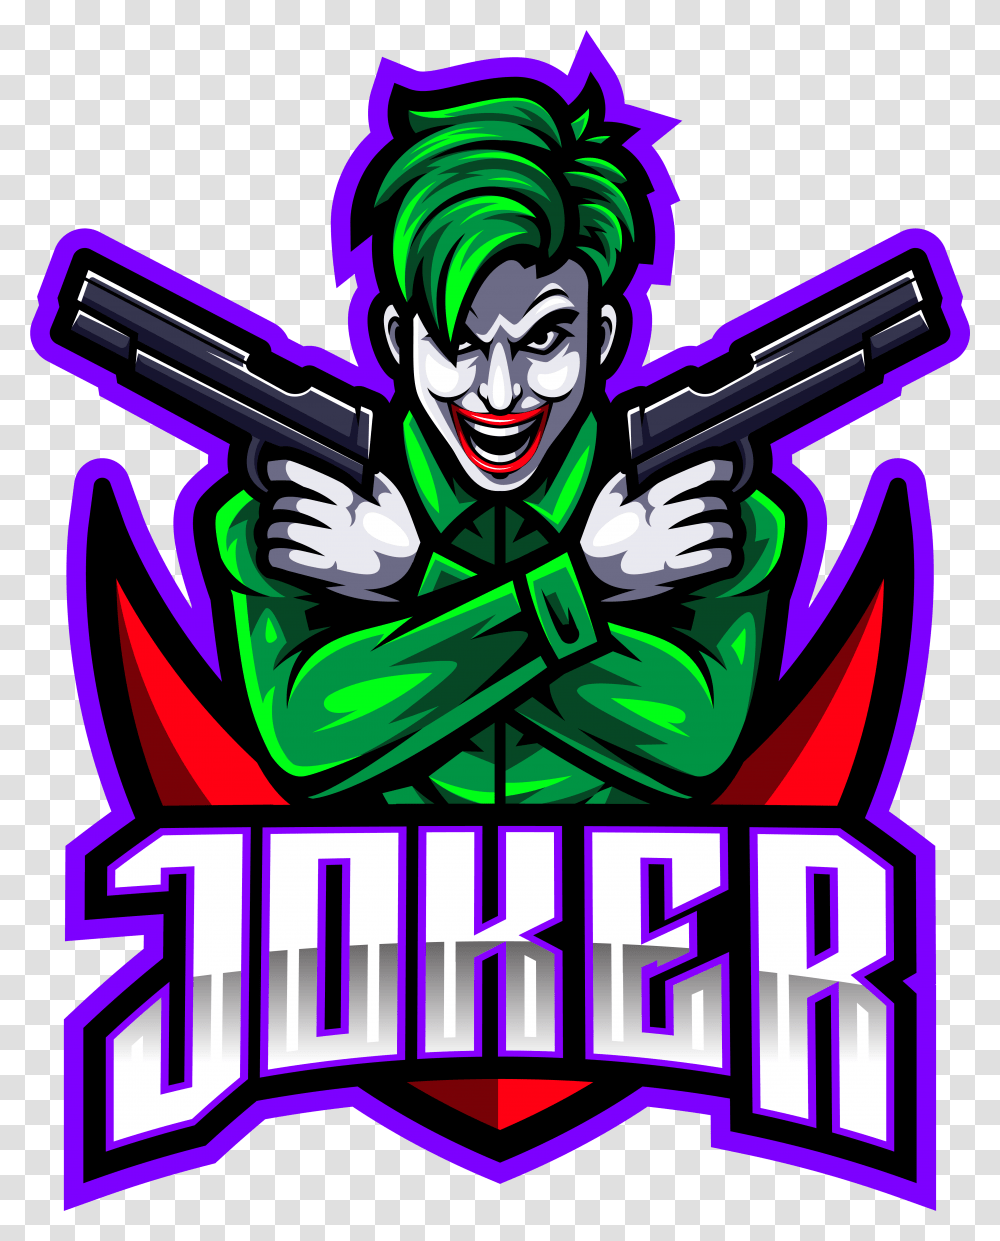 Joker Gunners Esport Mascot Logo Design Joker Gaming Logo Hd, Advertisement, Poster, Flyer, Paper Transparent Png